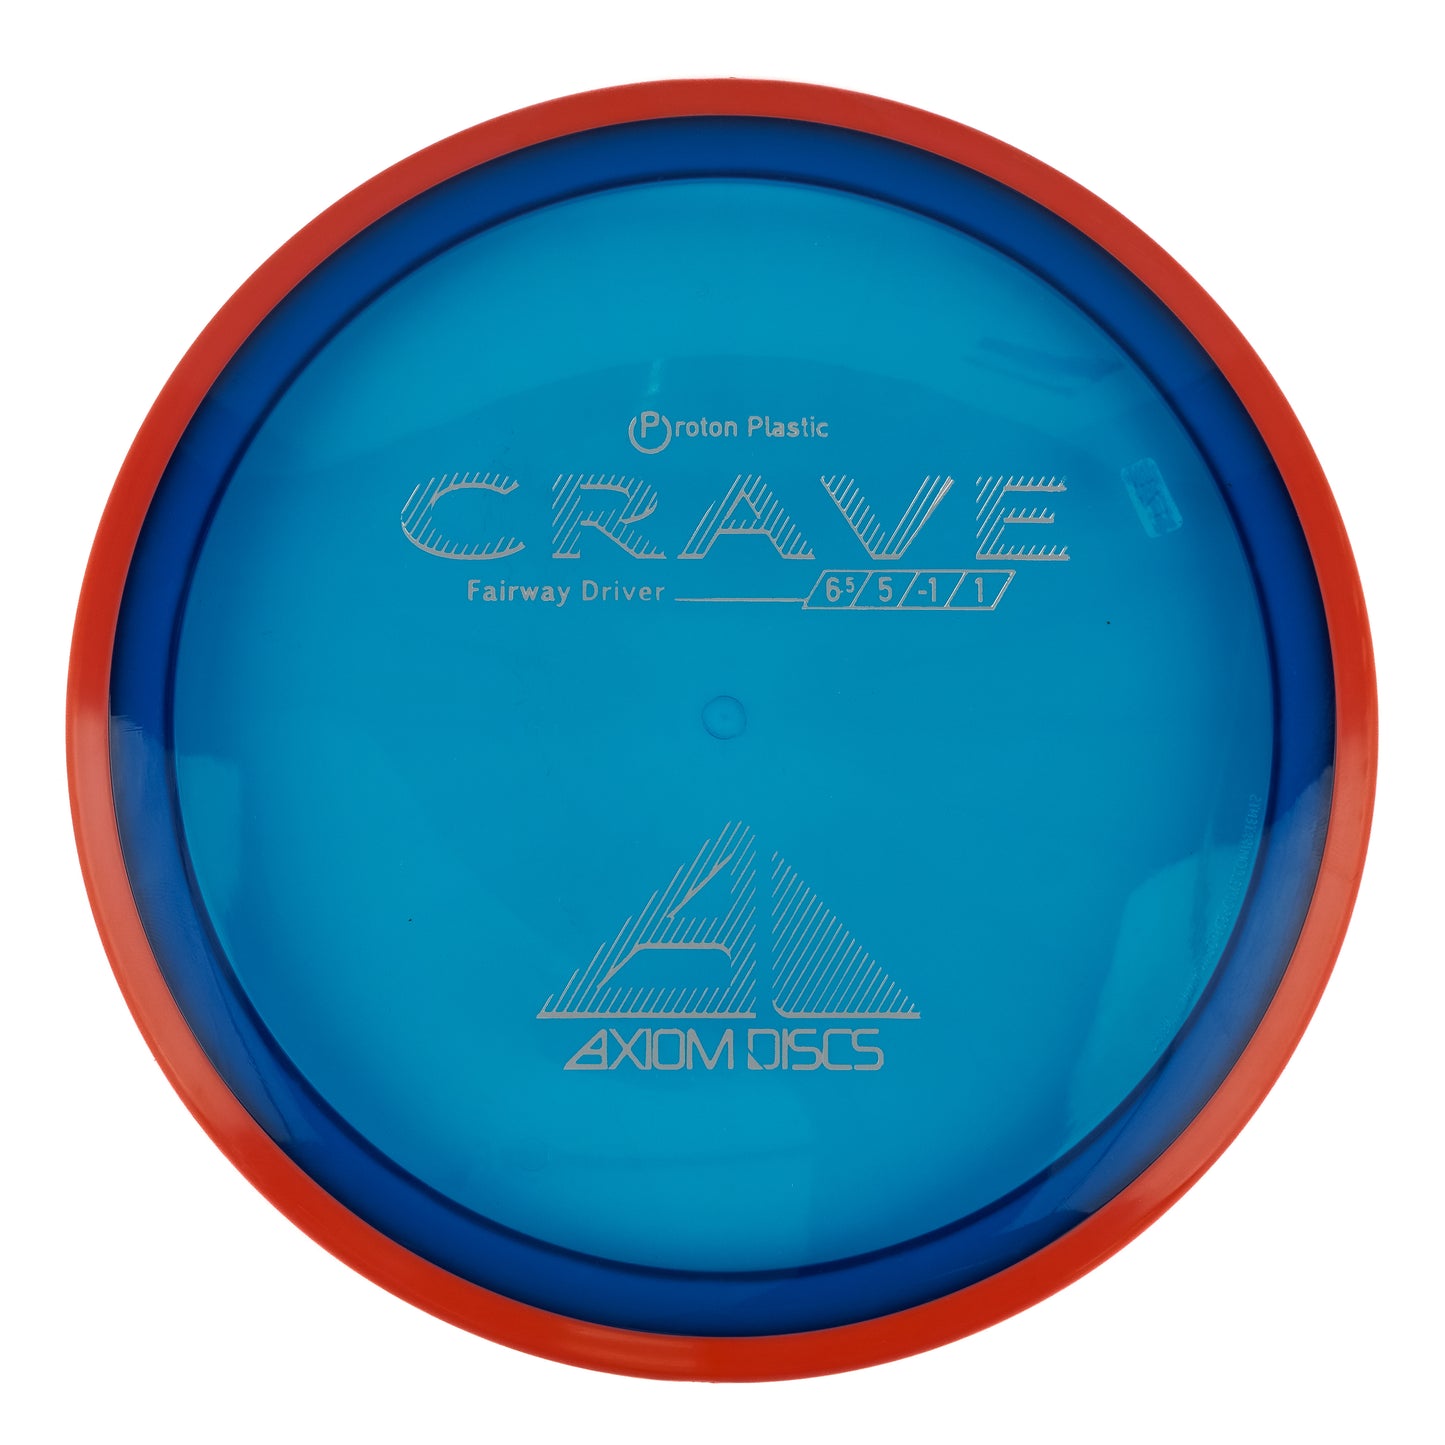 Axiom Crave - Proton 173g | Style 0001